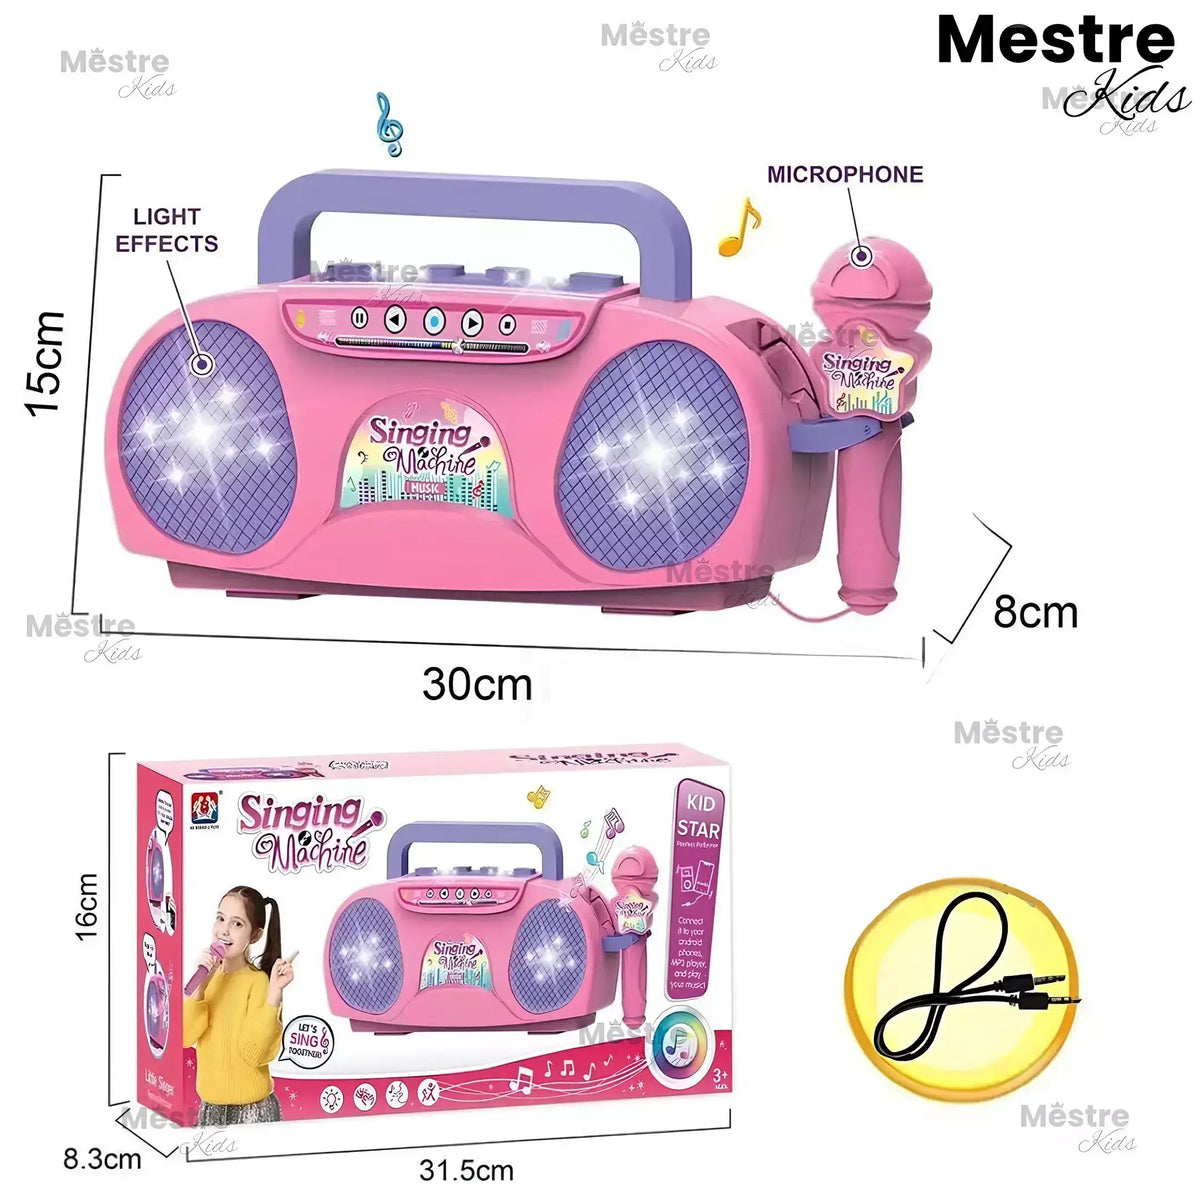 Microfone e Rádio de Karaokê - Mestre Kids®